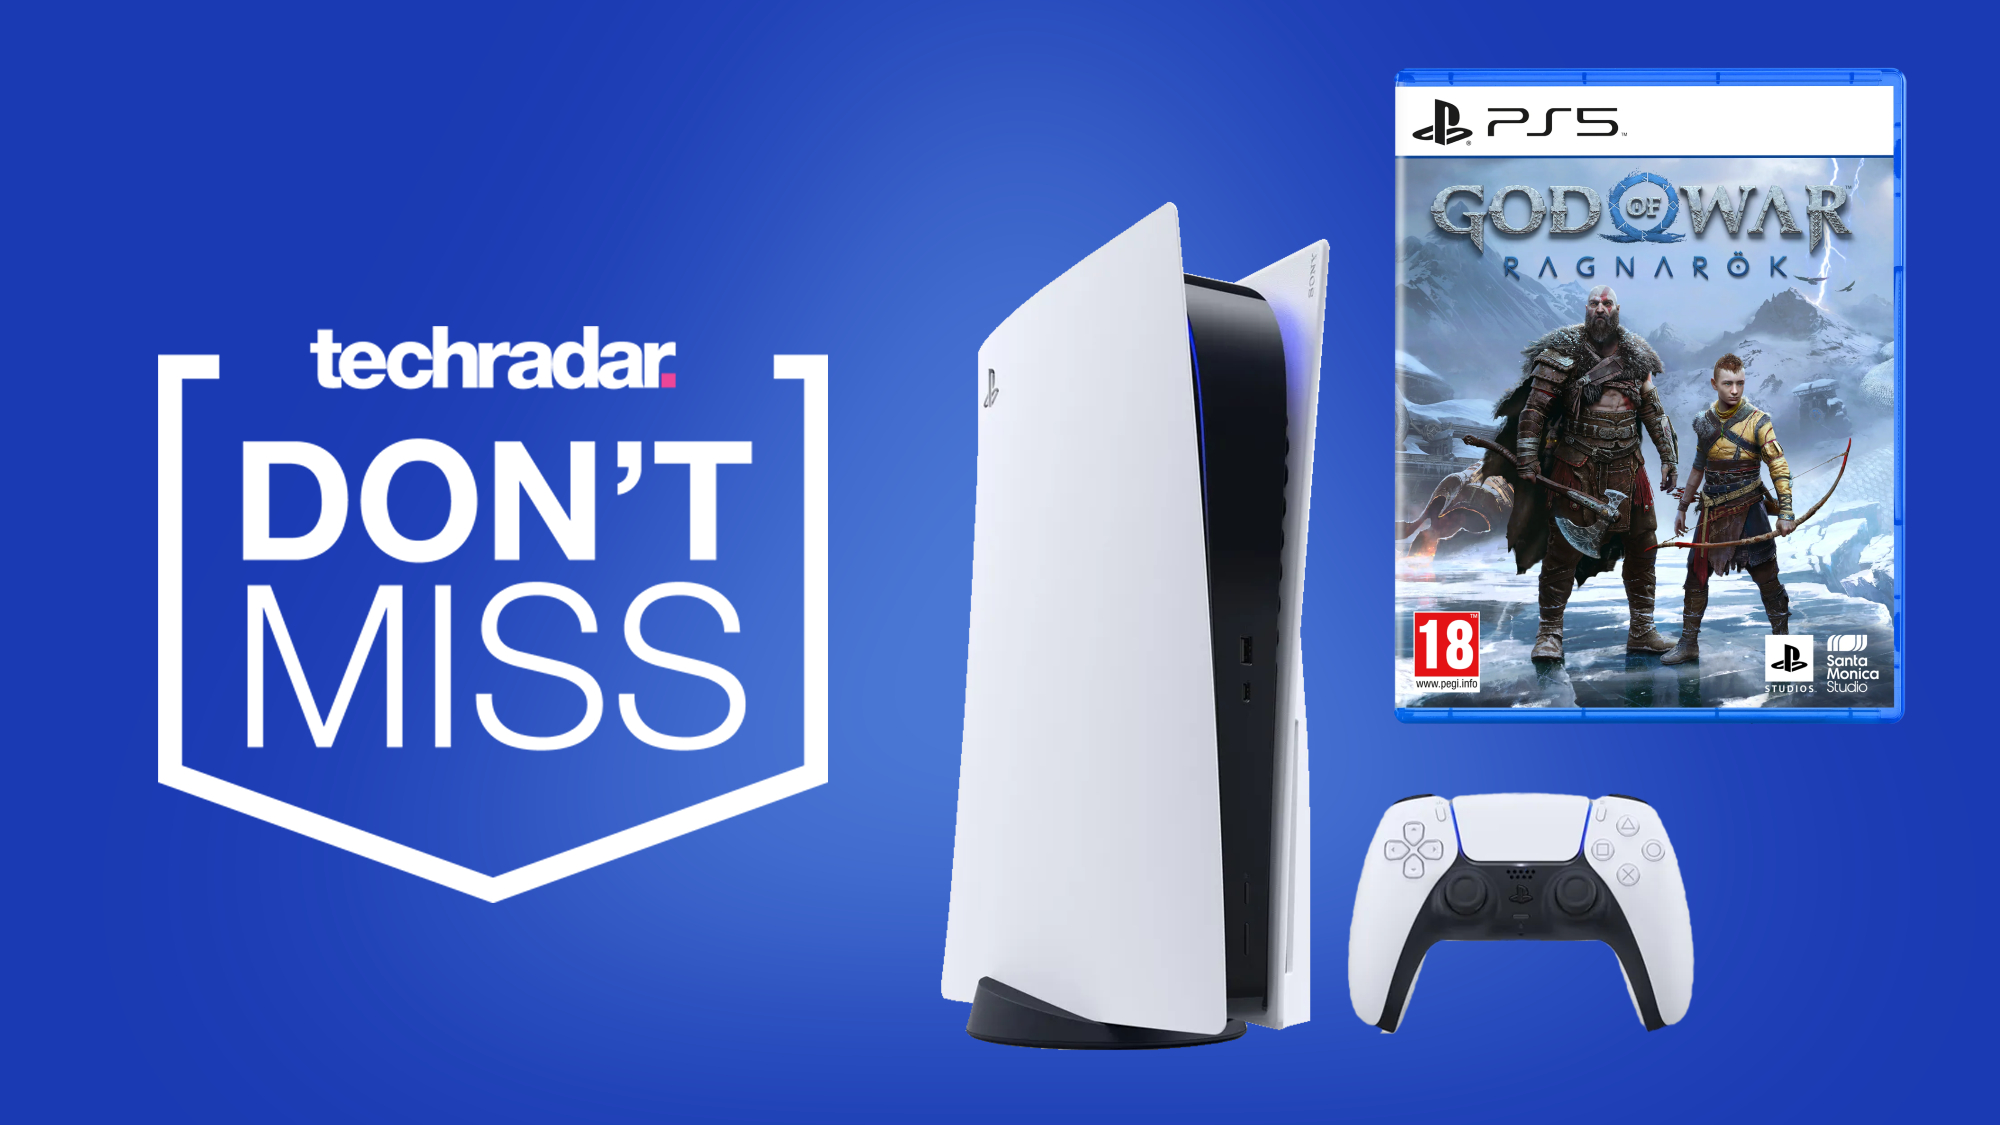 Sony PlayStation 5 PS5 5 - God of War Ragnarok - Game Deals